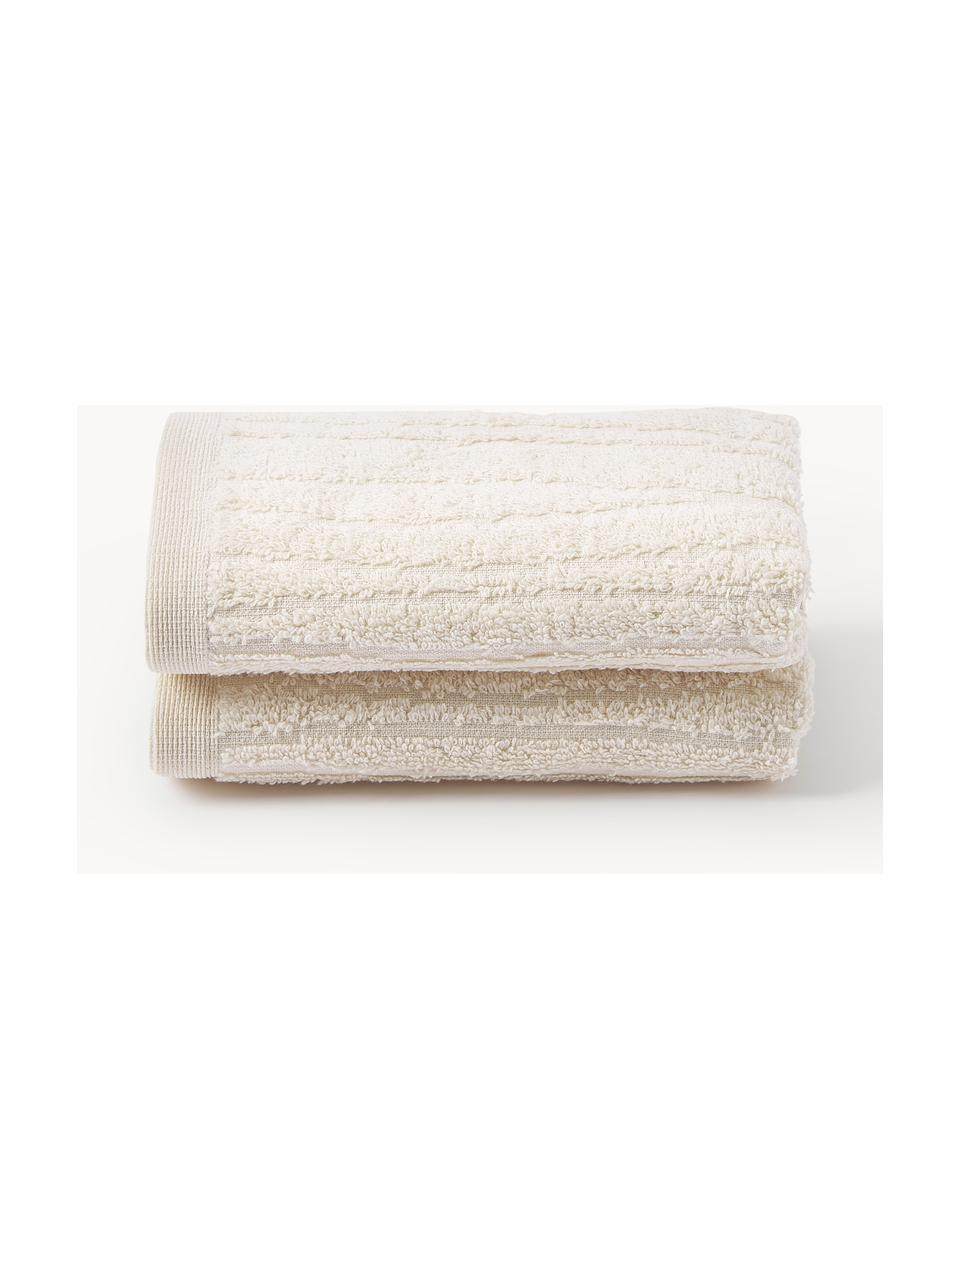 Toallas de algodón Adriana, tamaños diferentes, Beige claro, Toalla lavabo, An 50 x L 100 cm, 2 uds.